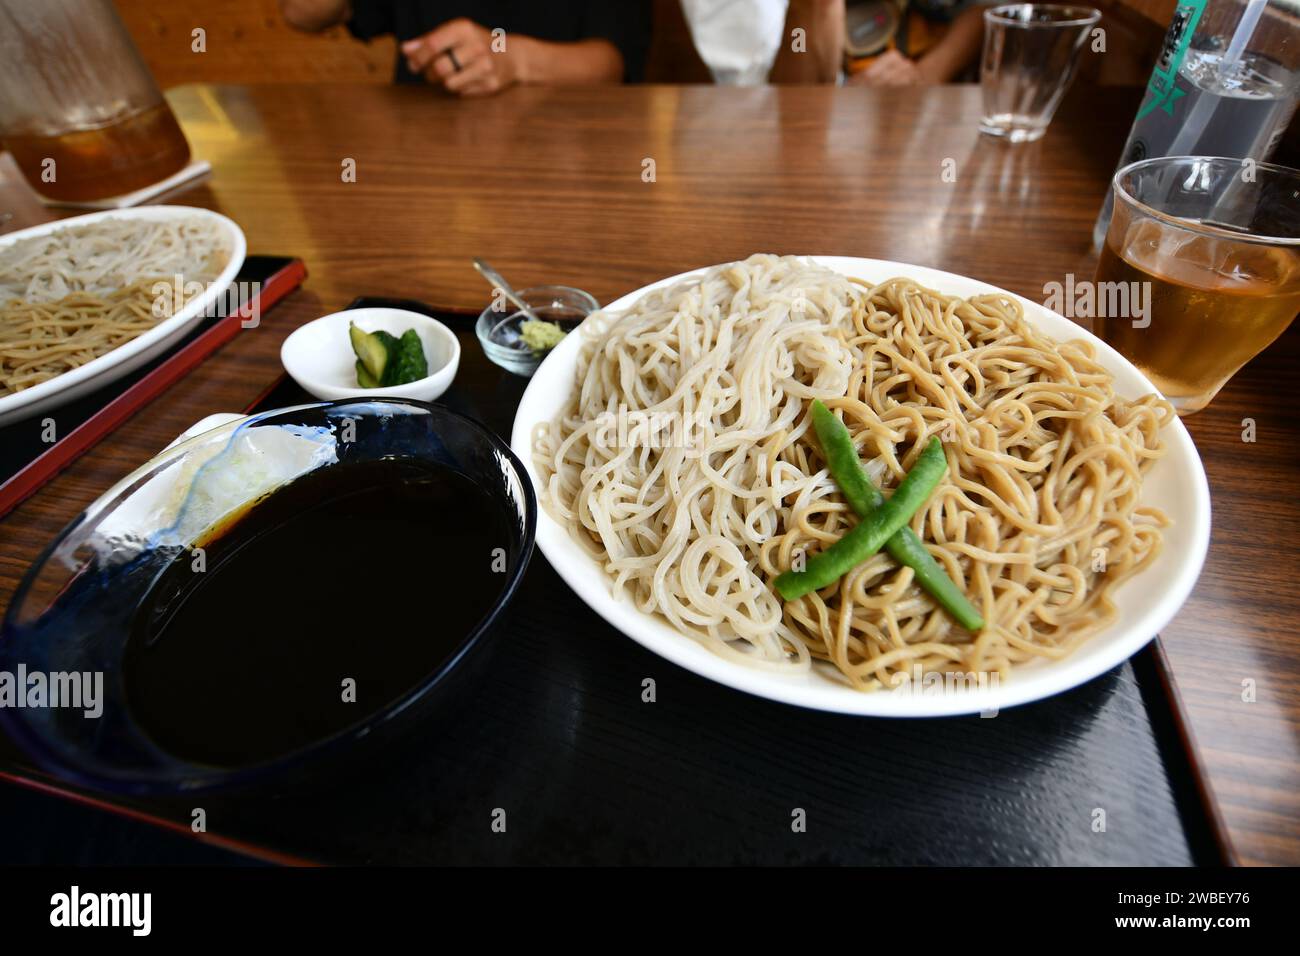 Una persona è seduta a un tavolo, con un paio di ciotole piene di deliziosi noodles davanti a loro Foto Stock